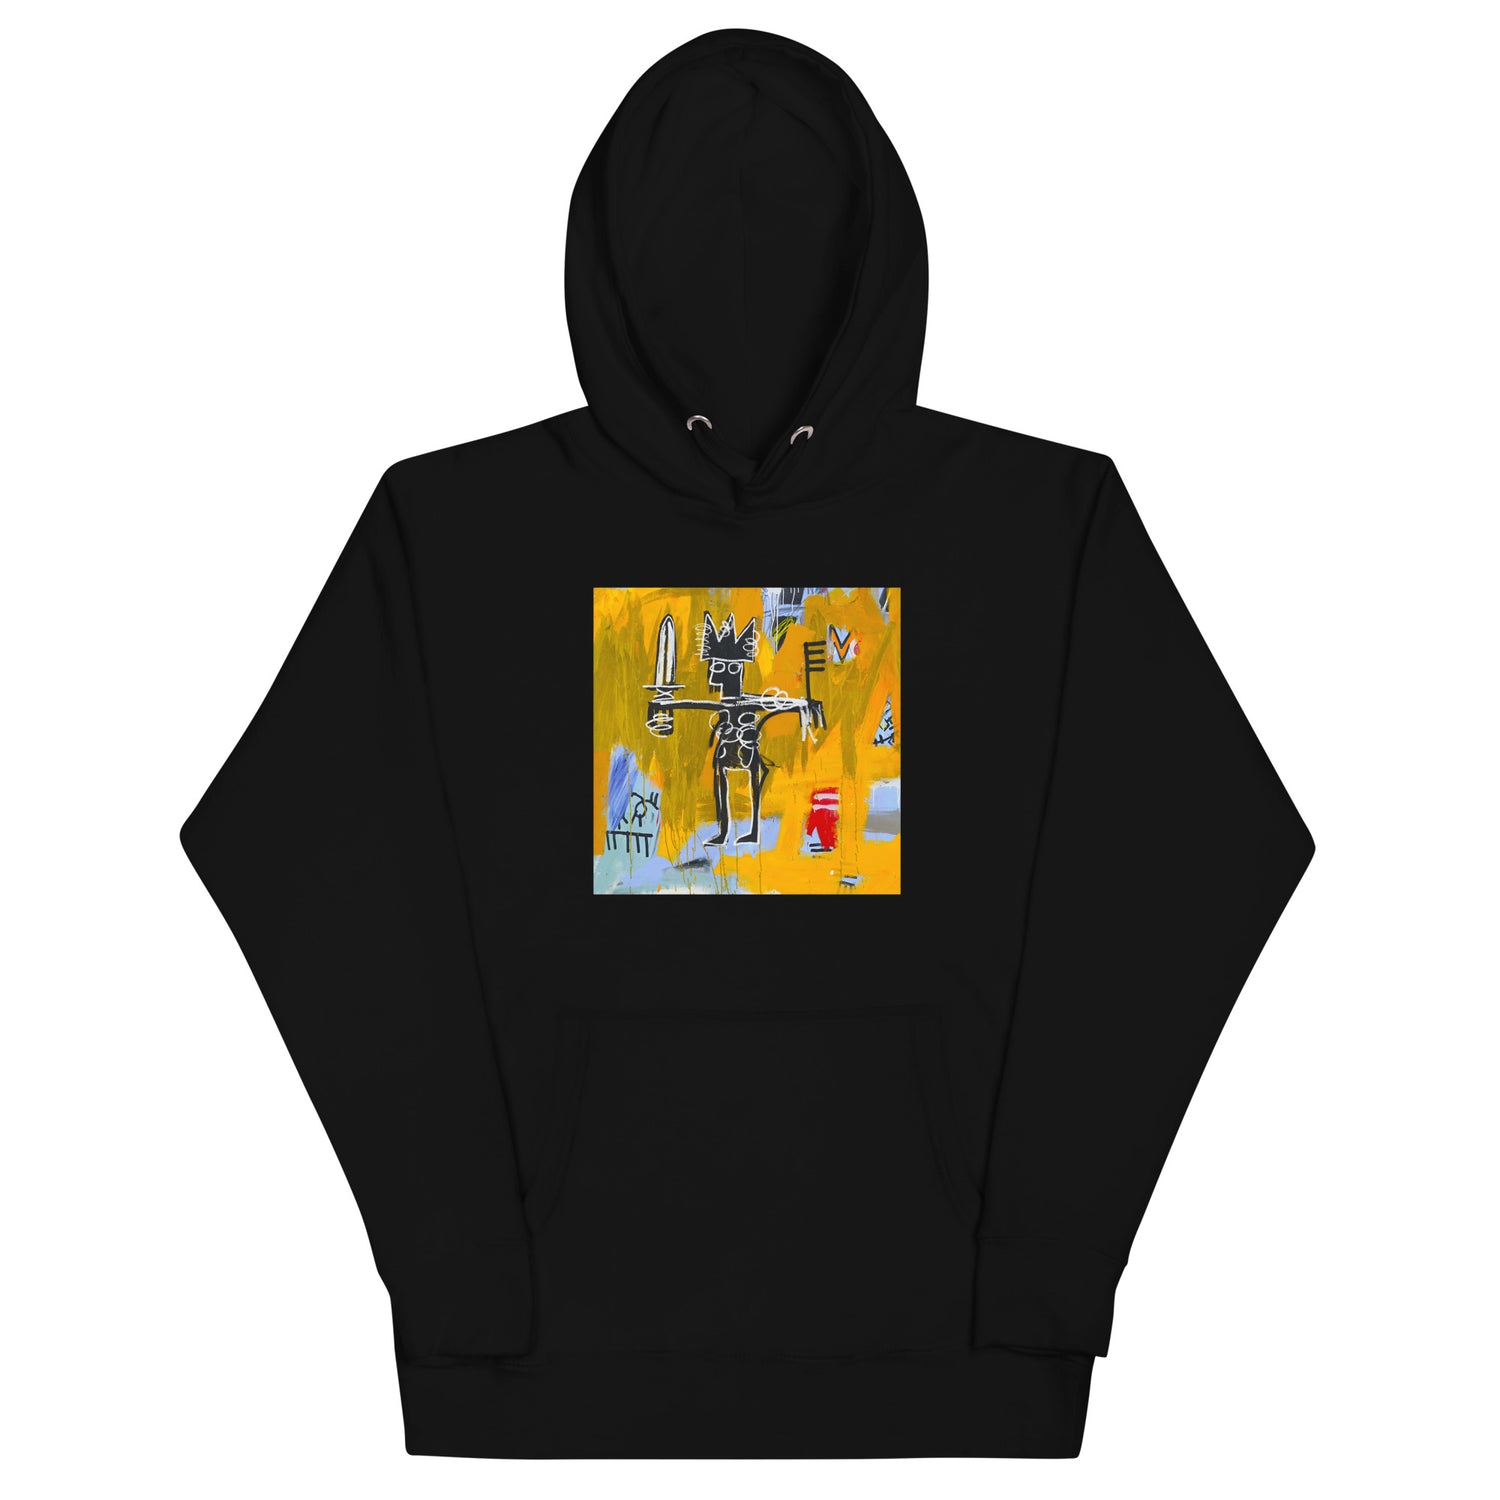 Jean-Michel Basquiat "Julius Caesar on Gold" Artwork Printed Premium Streetwear Sweatshirt Hoodie Black